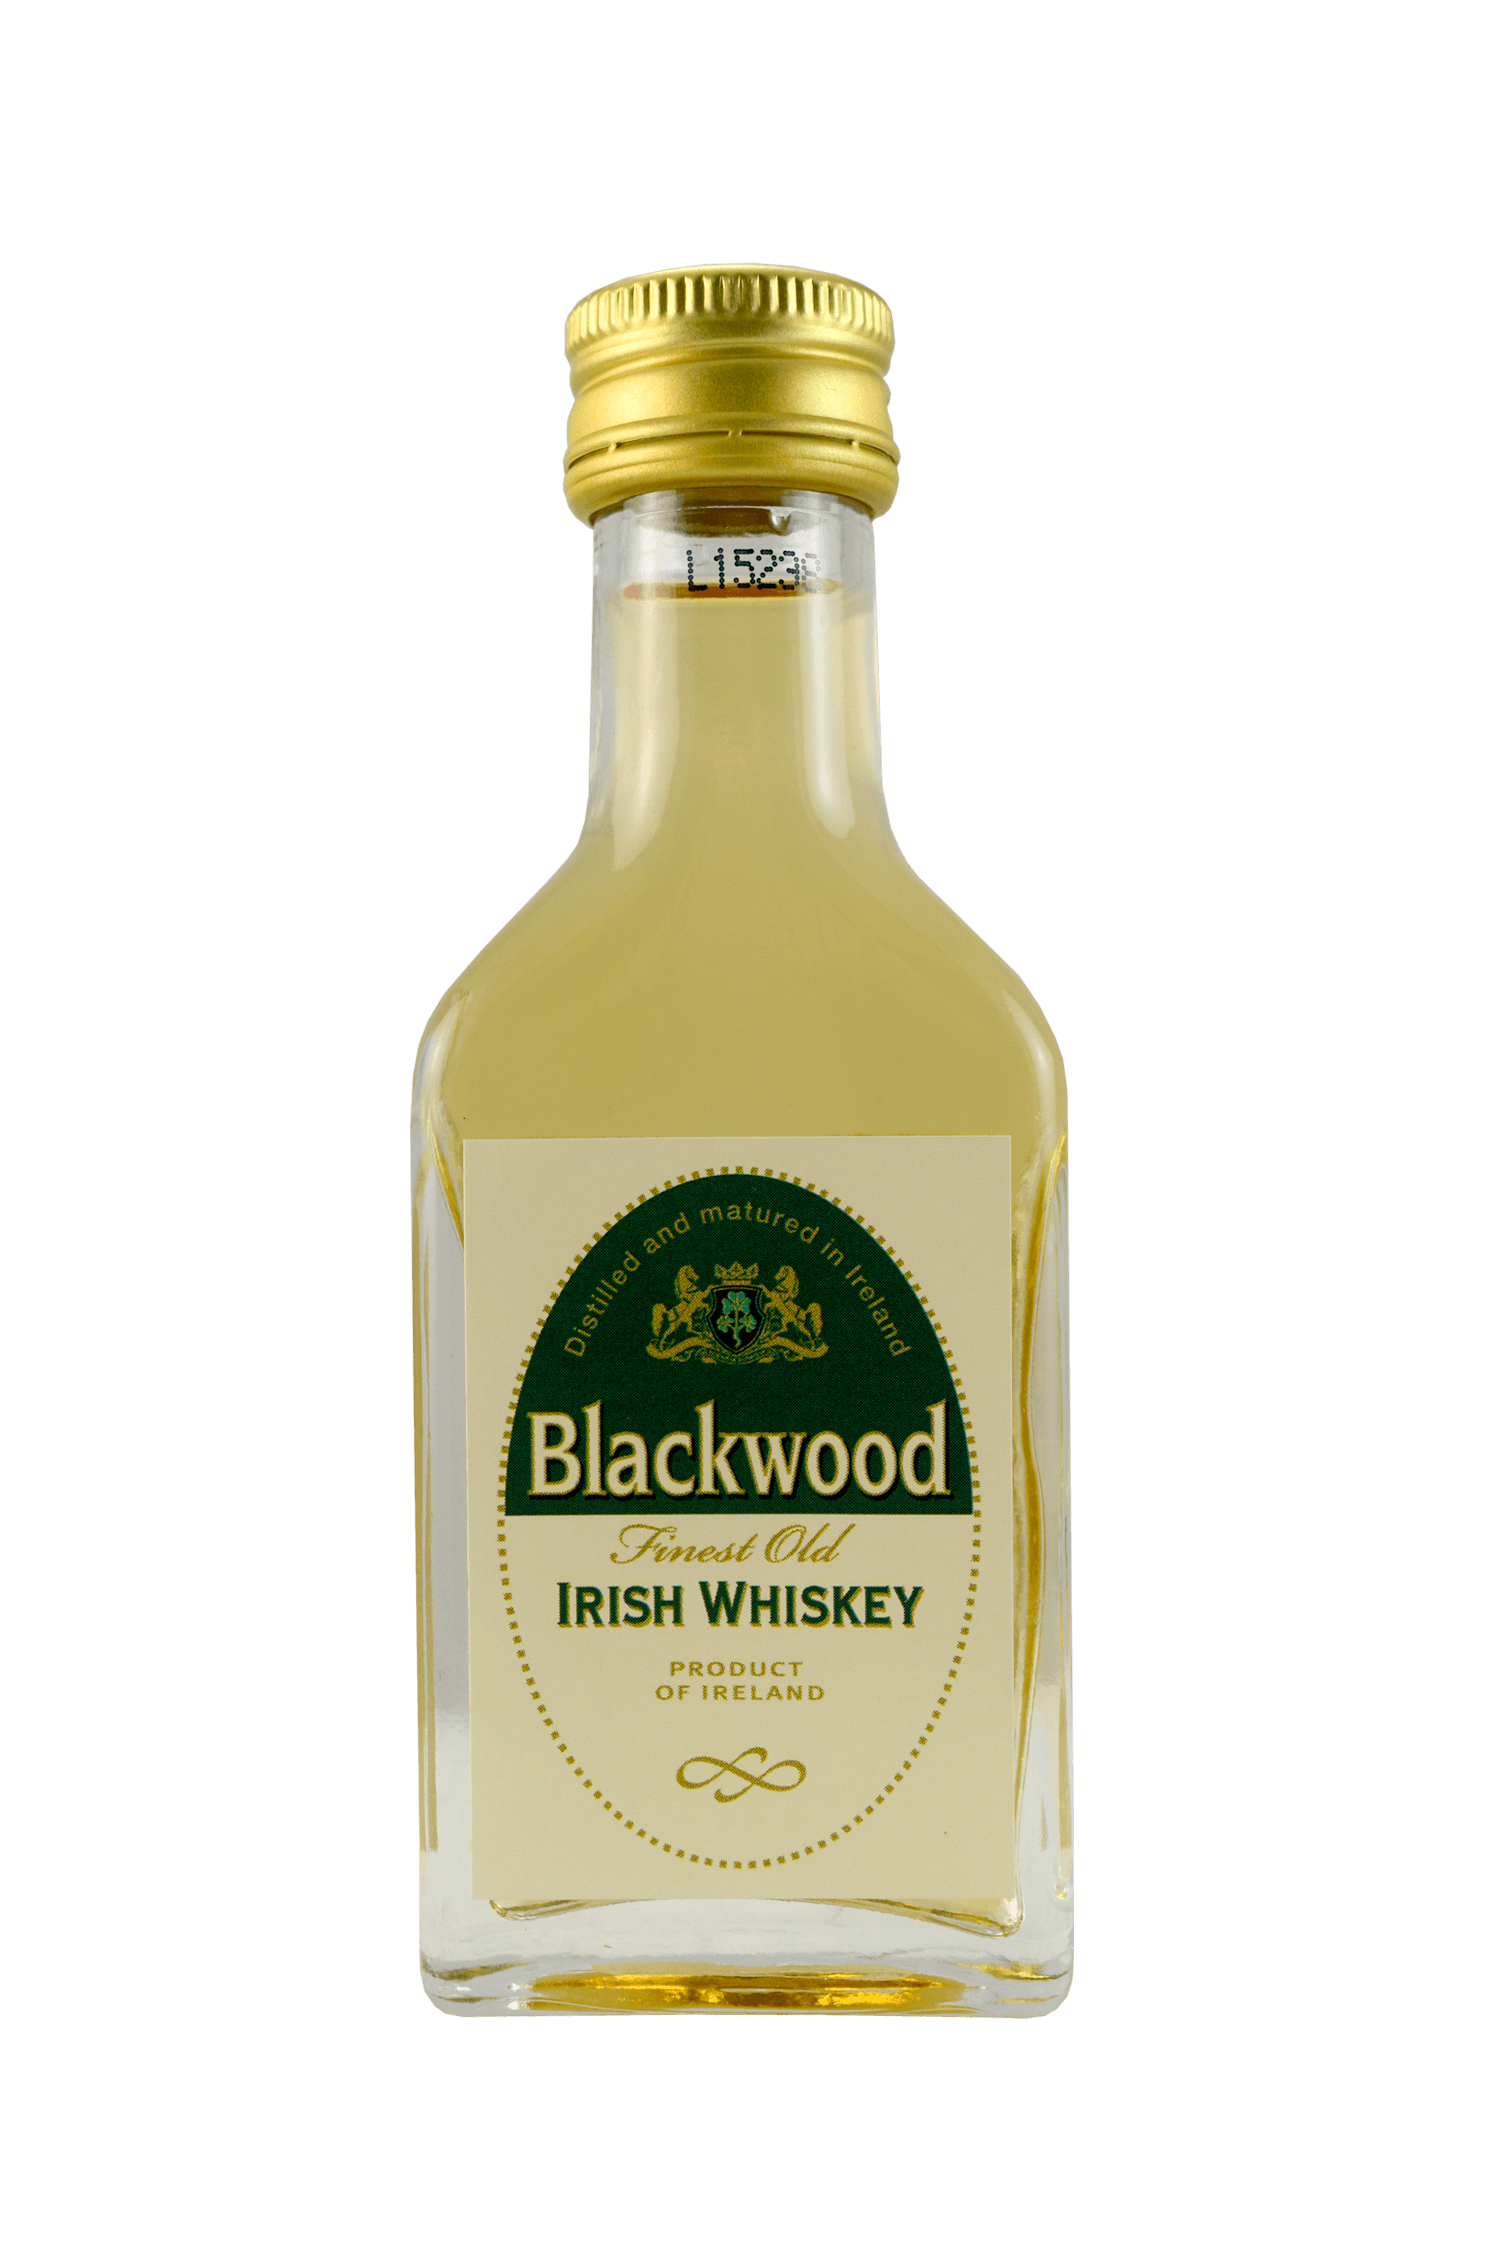 Blackwood Finest Old Irish Whiskey